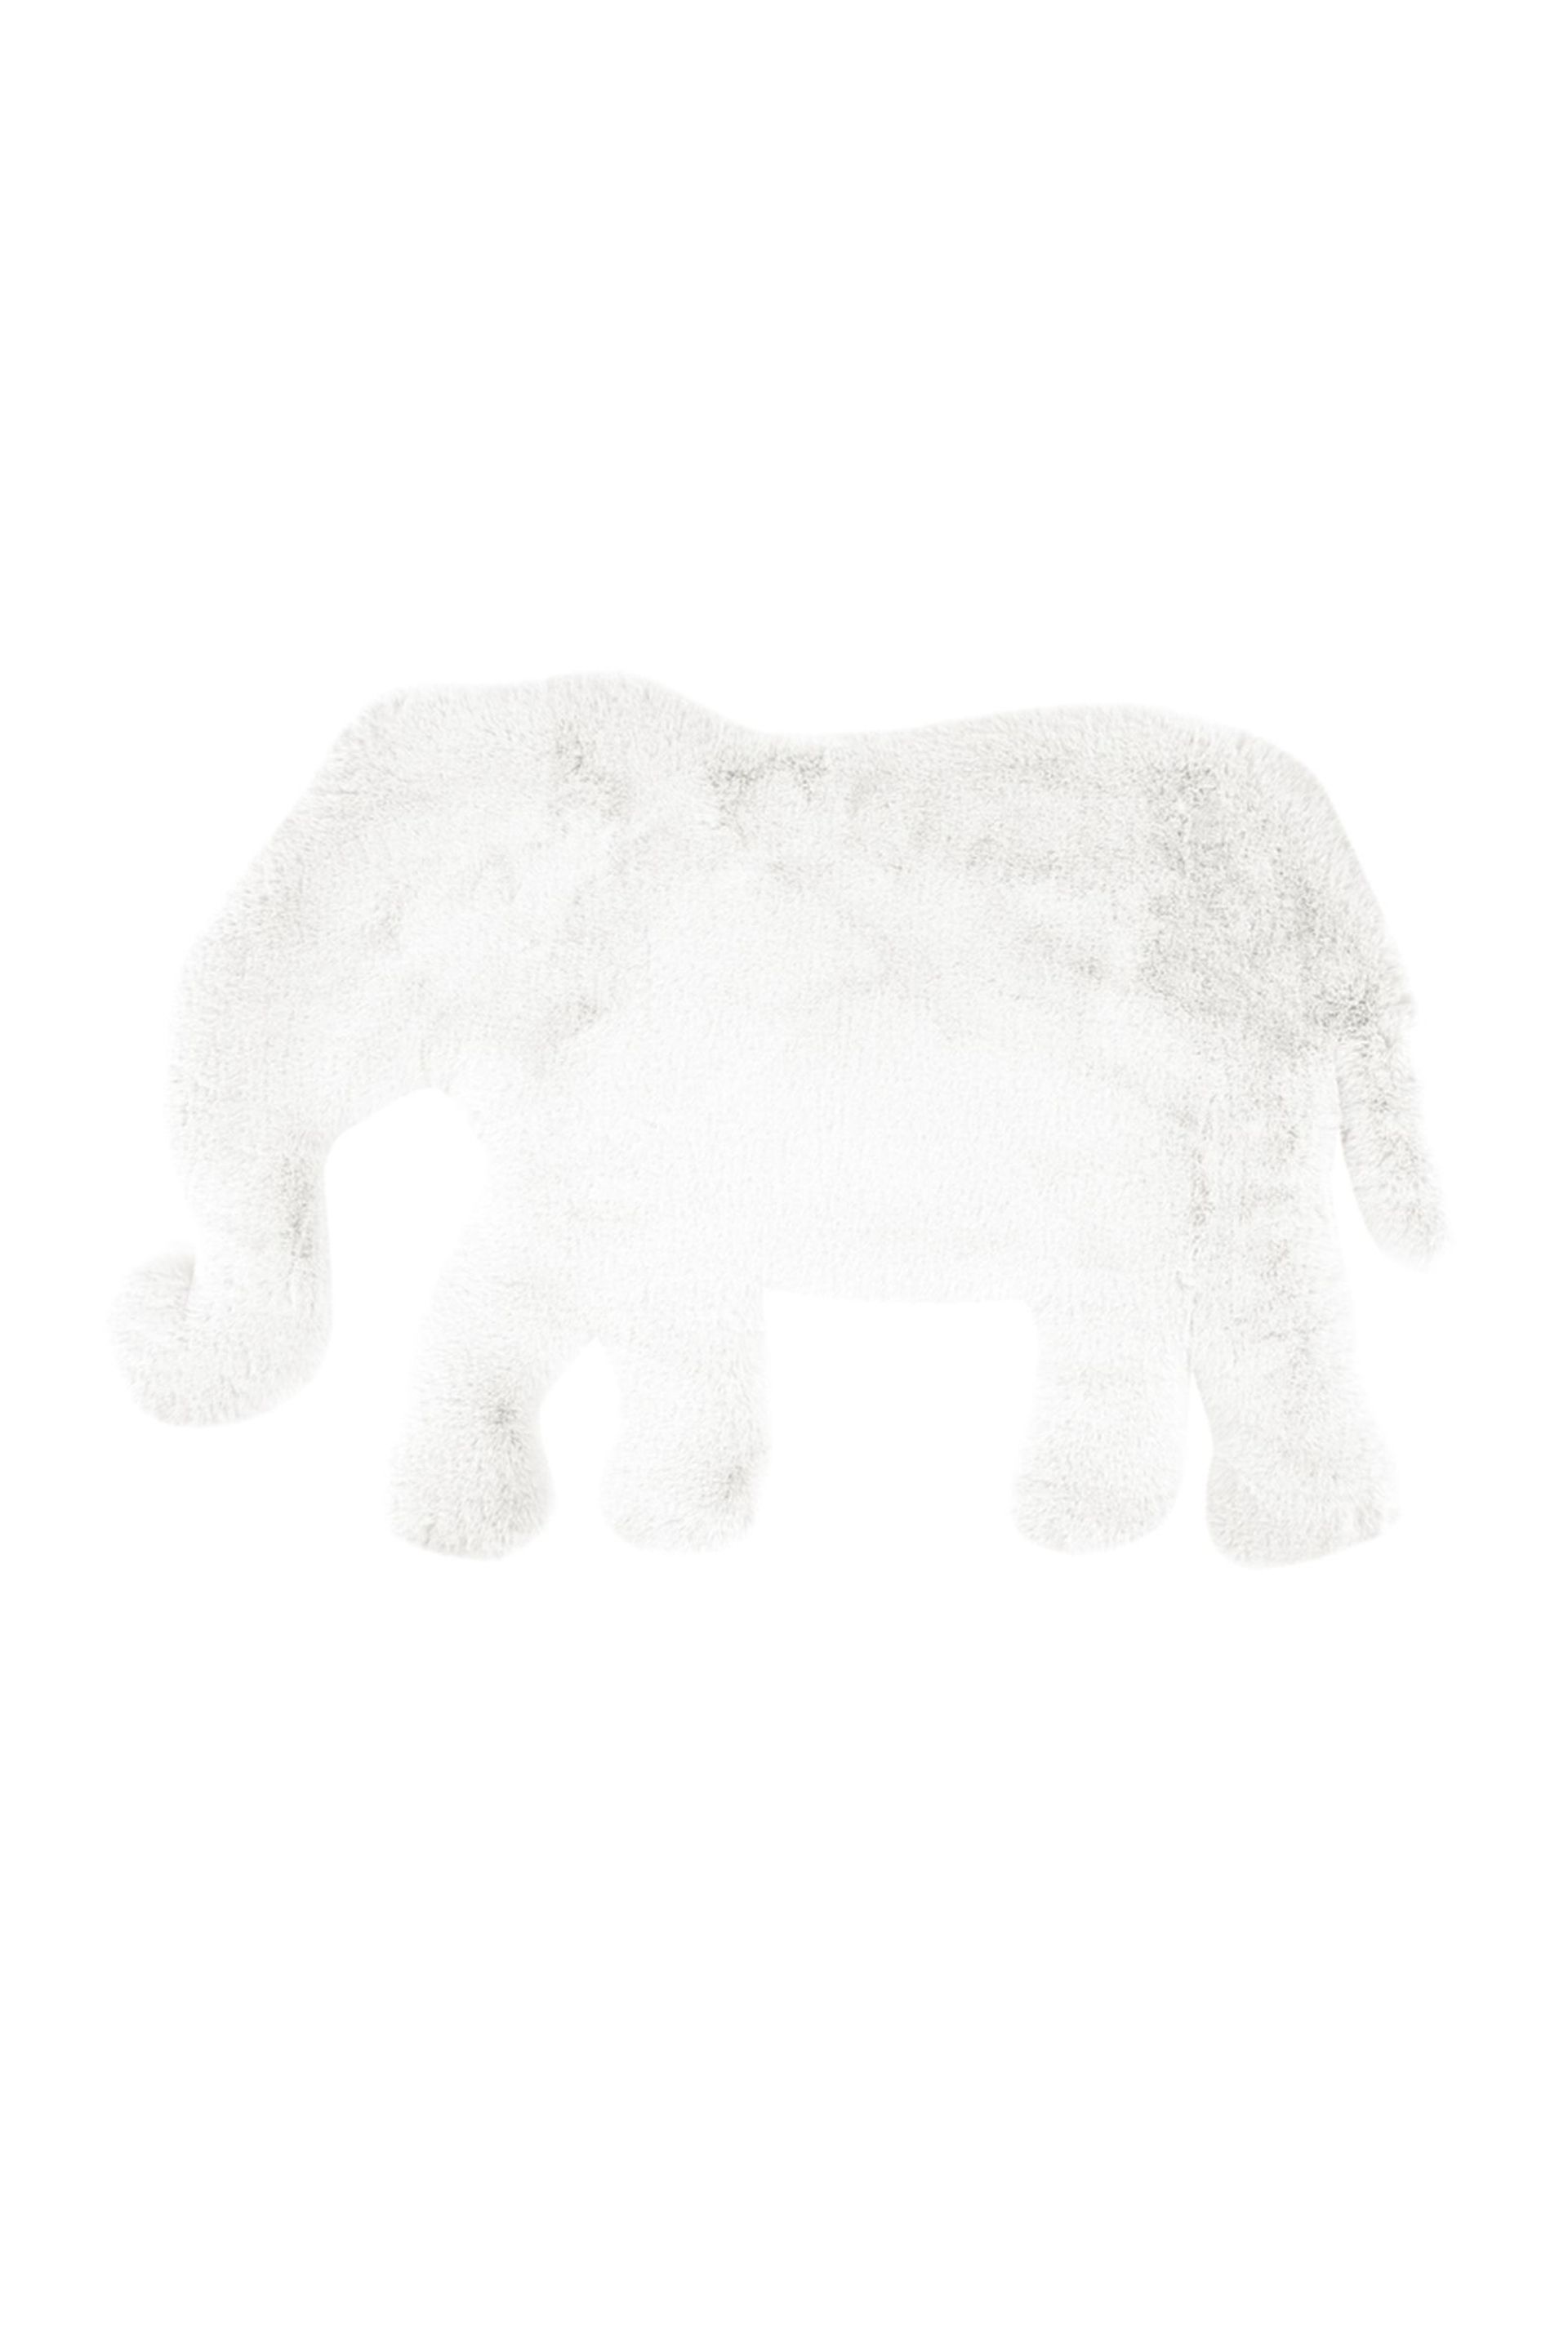 Teppich Lovely Kids 125-Elephant Weiß 60 cm x 90 cm